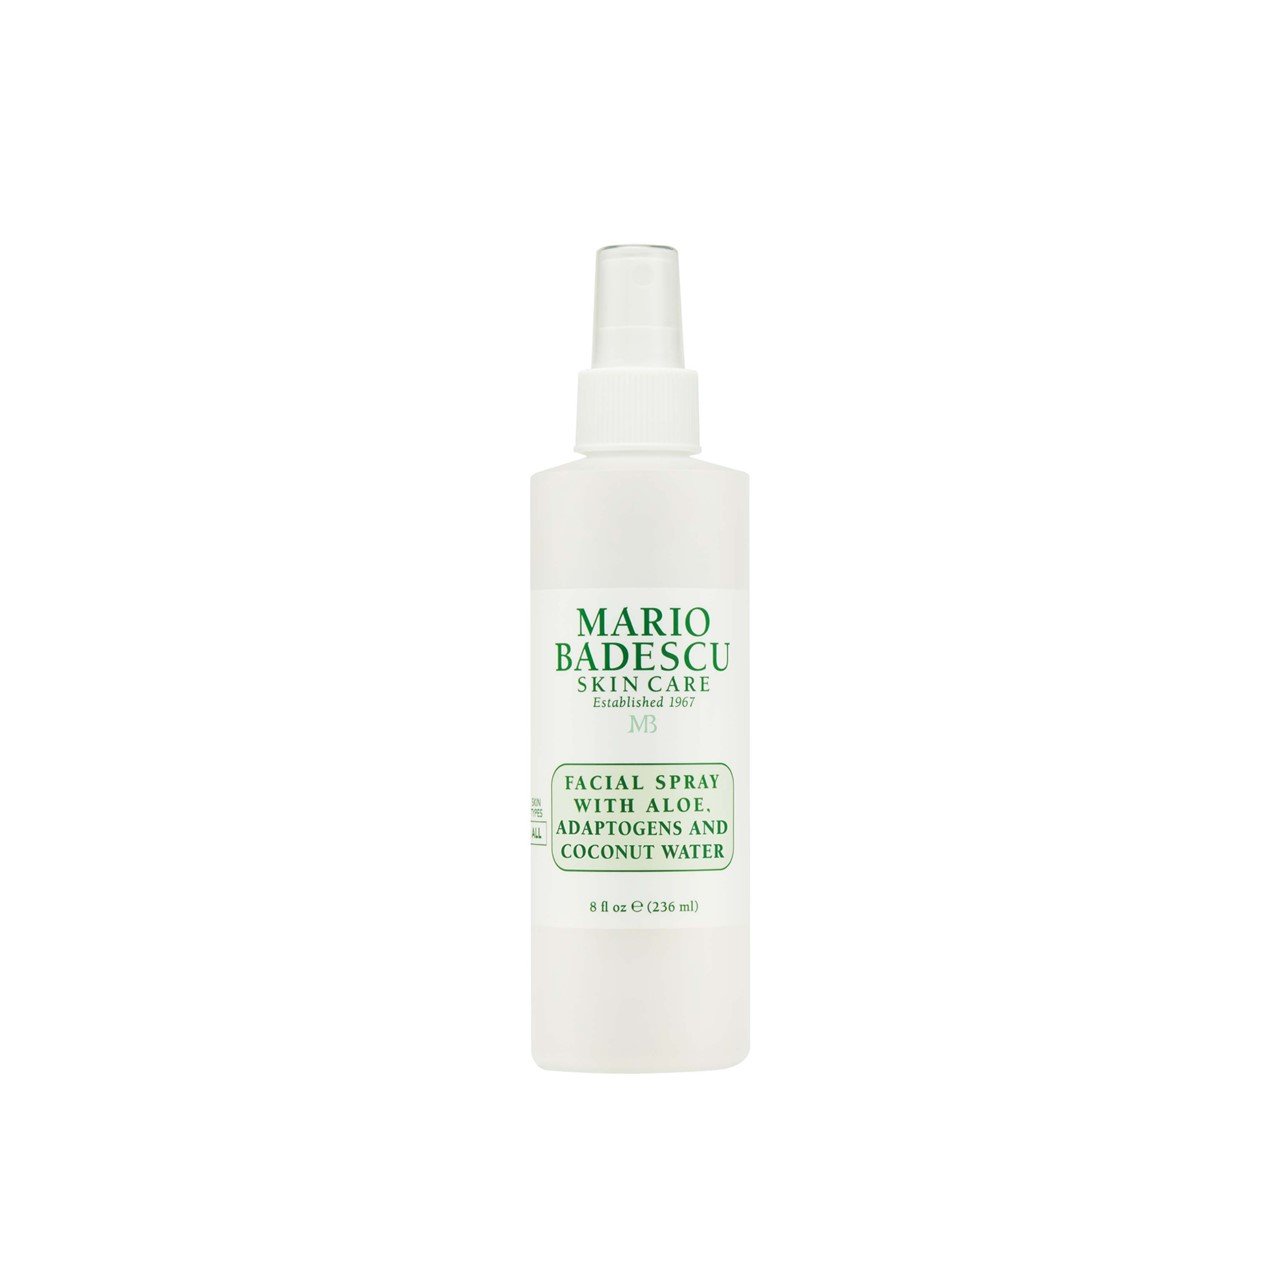 Mario Badescu Facial Spray With Aloe, Adaptogens & Coconut Water 236ml